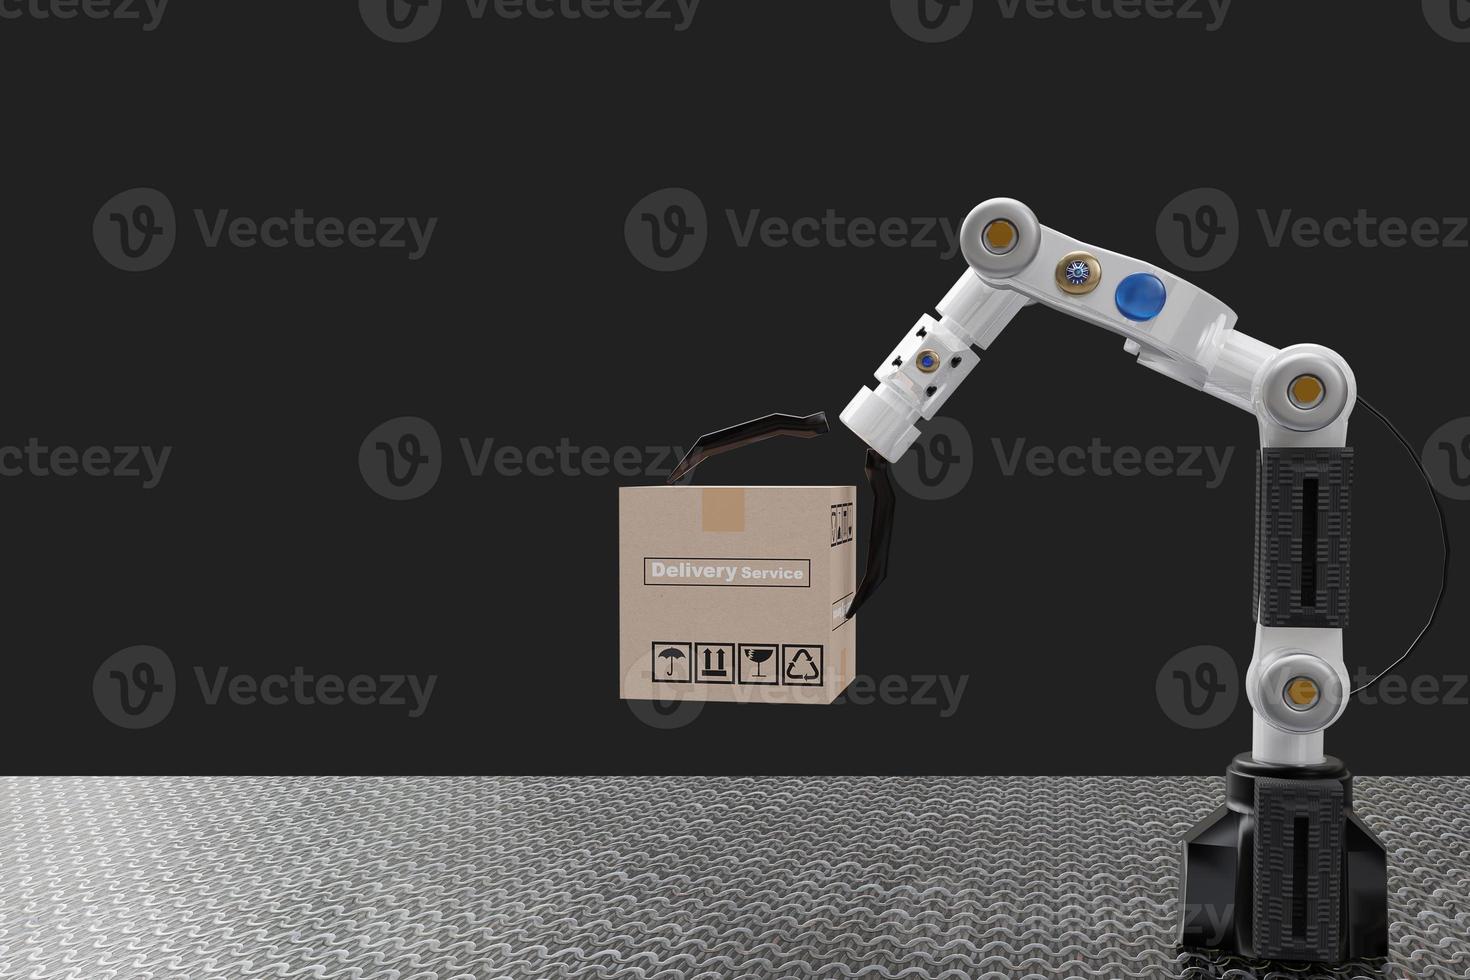 Roboterarmobjekt für die Fertigungsindustrie Technologieproduktexport und -import zukünftiger Roboter Cyber im Lager von Hand mechanische Zukunftstechnologie foto